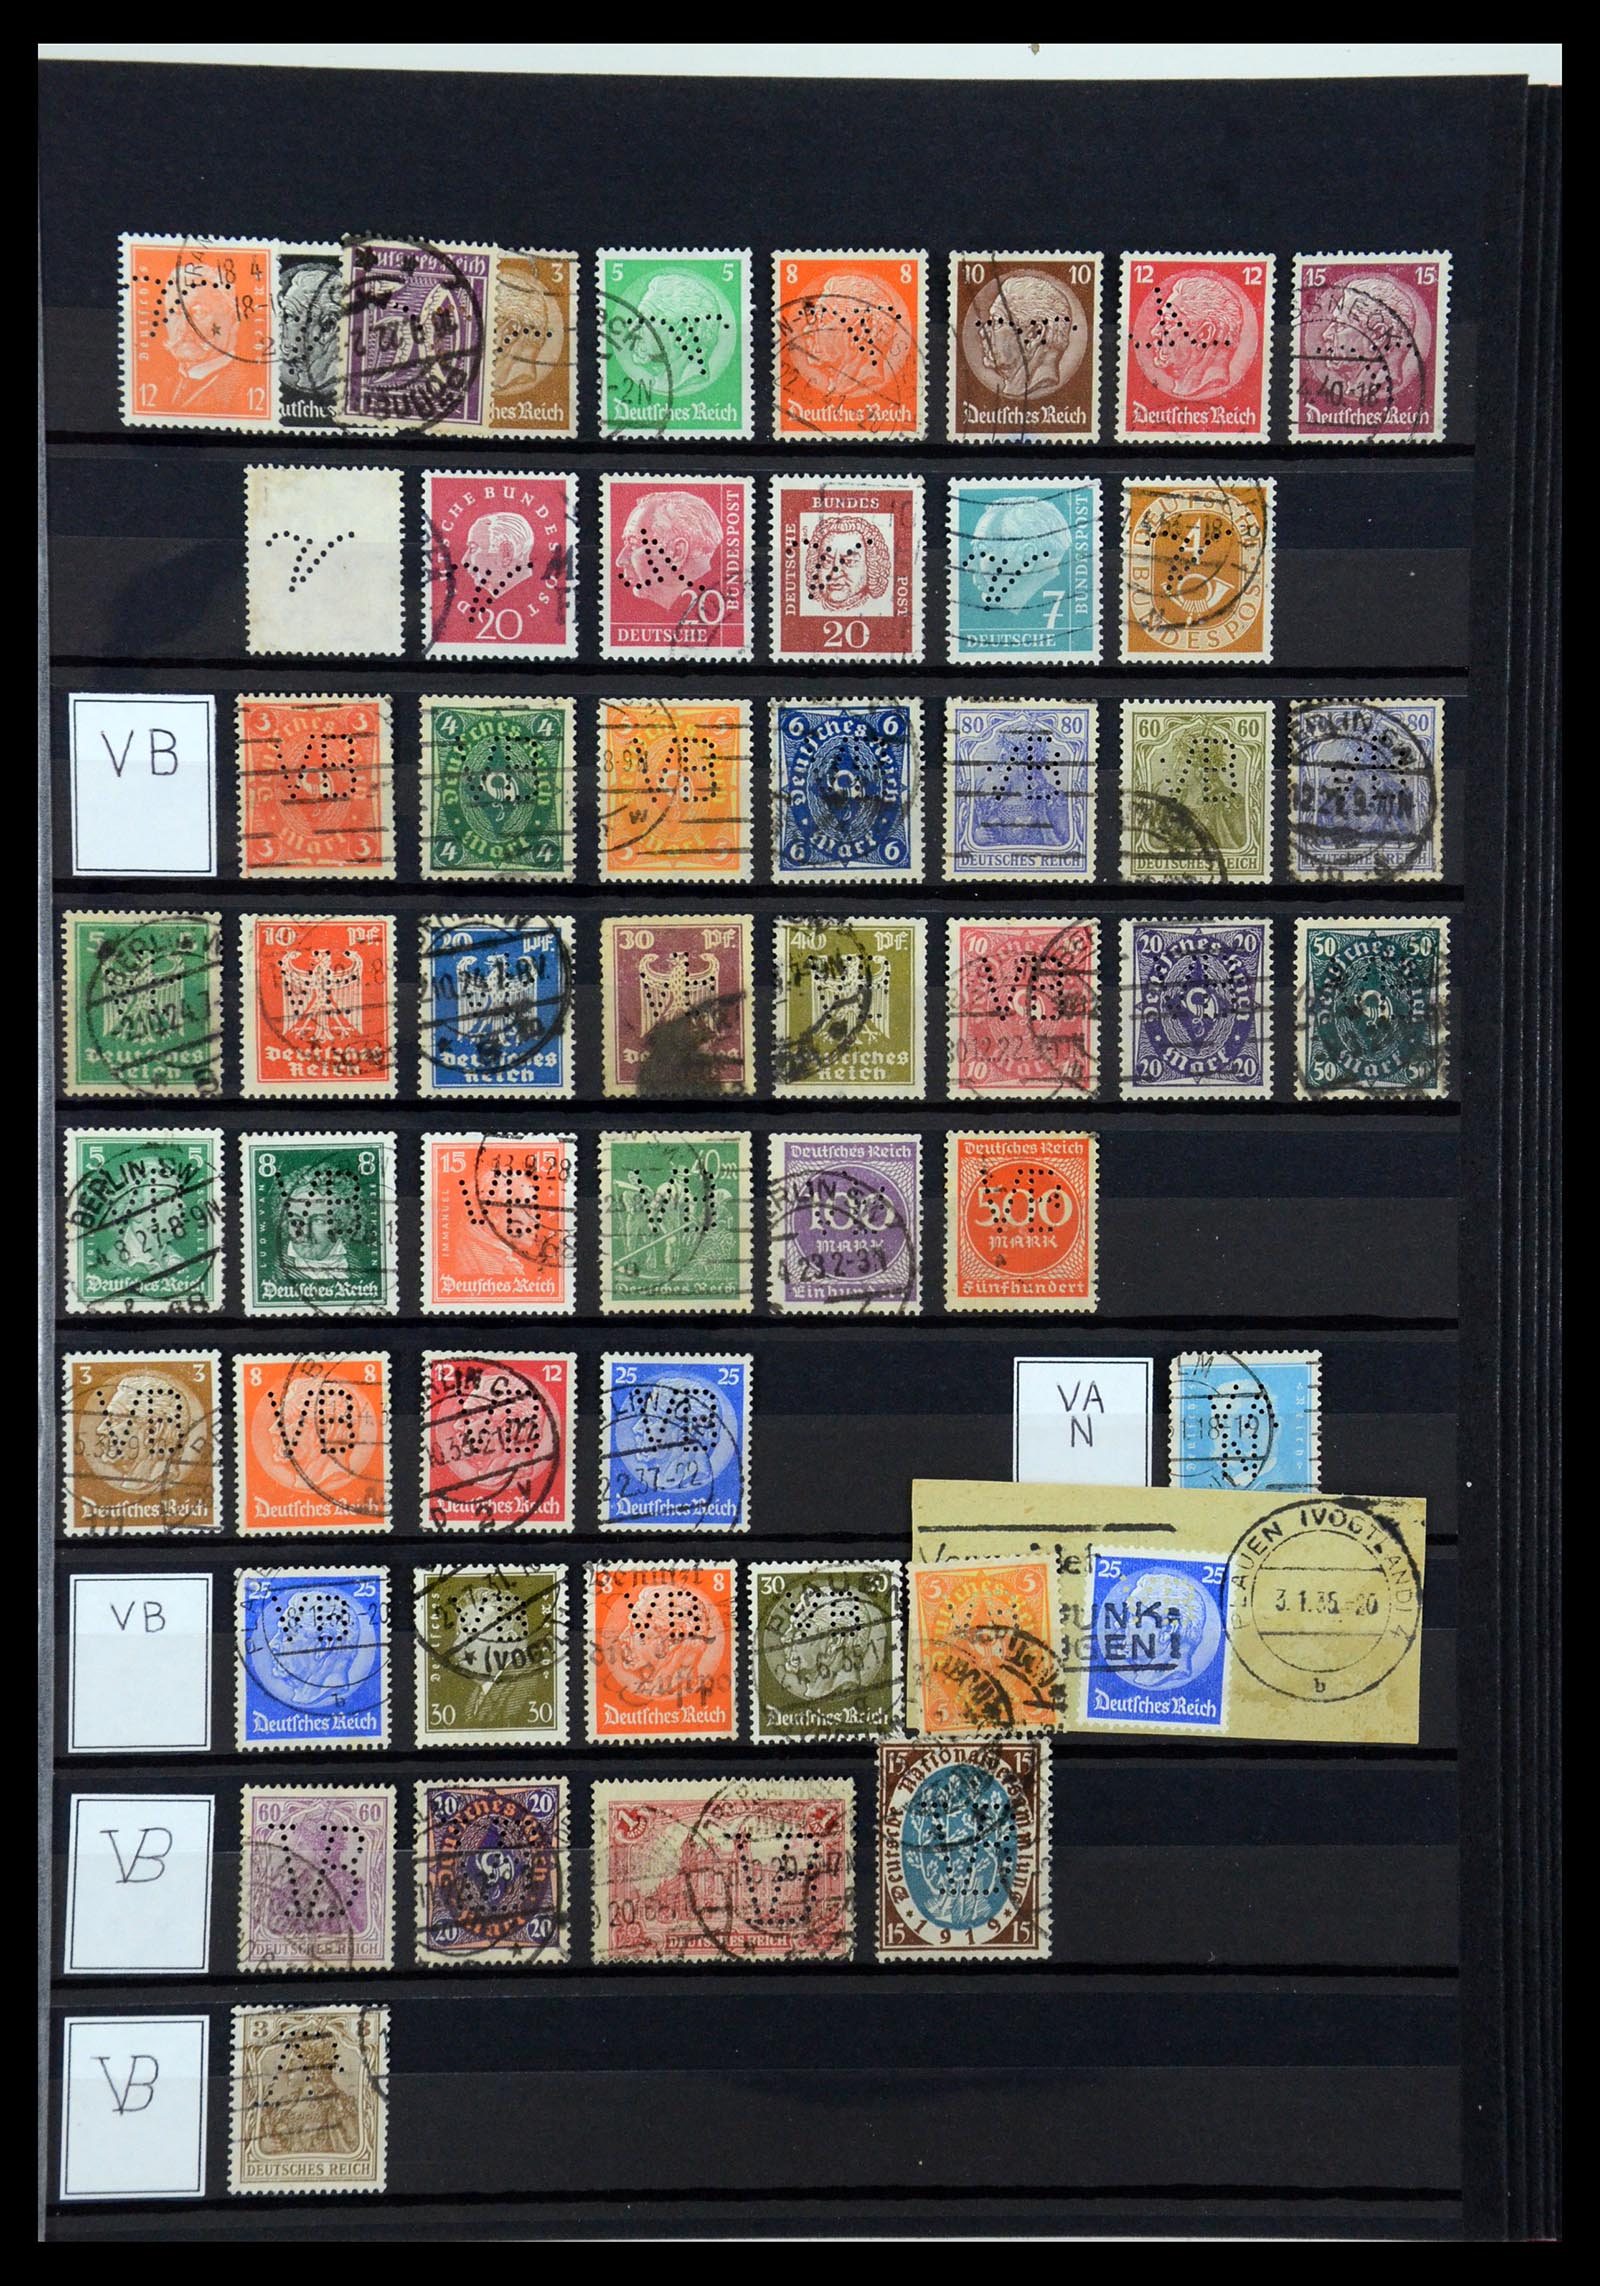 36405 324 - Stamp collection 36405 German Reich perfins 1880-1945.